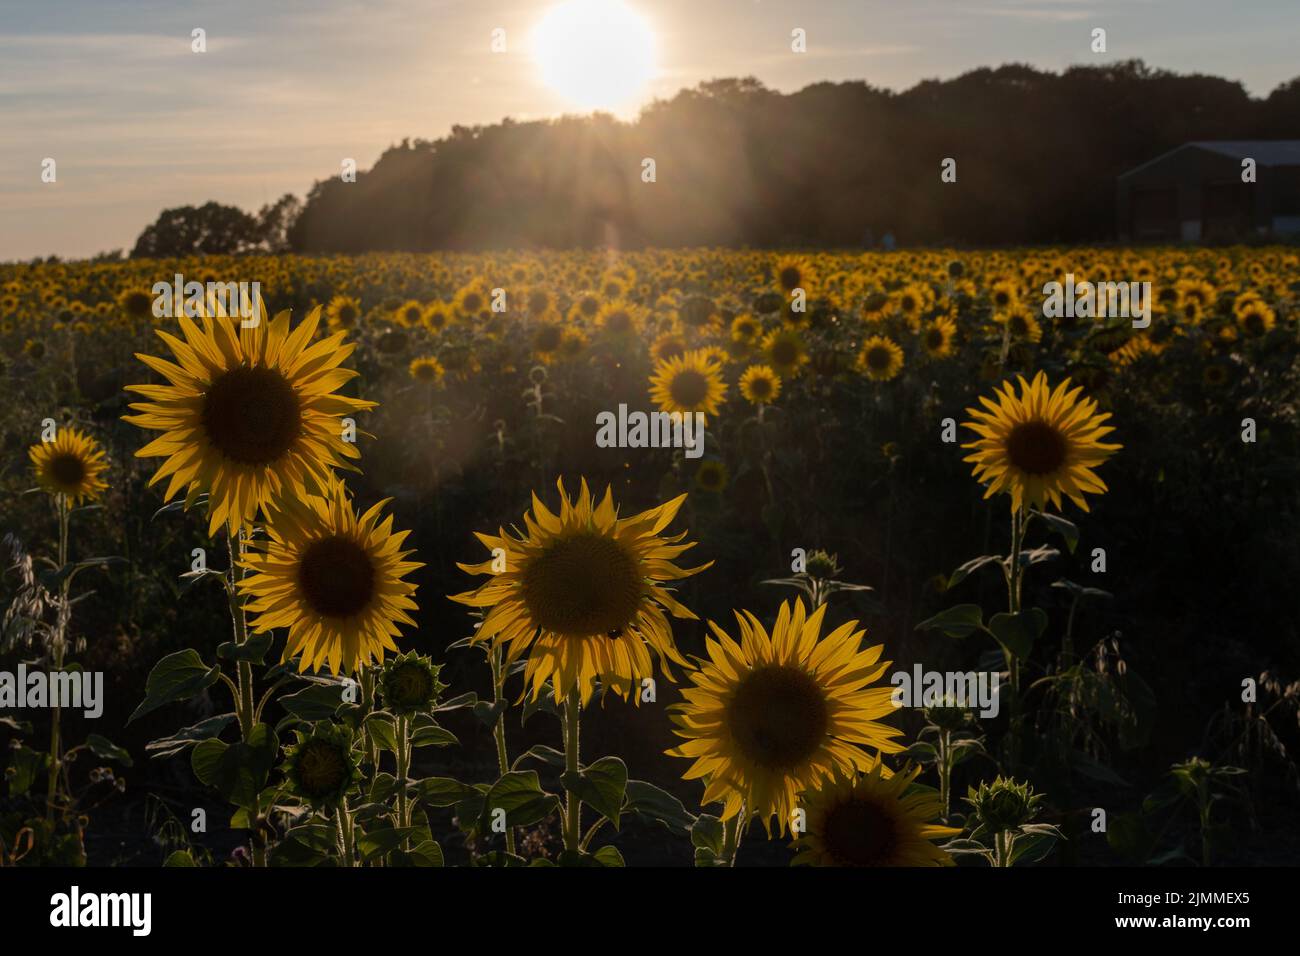 Campo de girasoles durante agosto o verano en la luz de la tarde, Hampshire, Inglaterra, Reino Unido Foto de stock